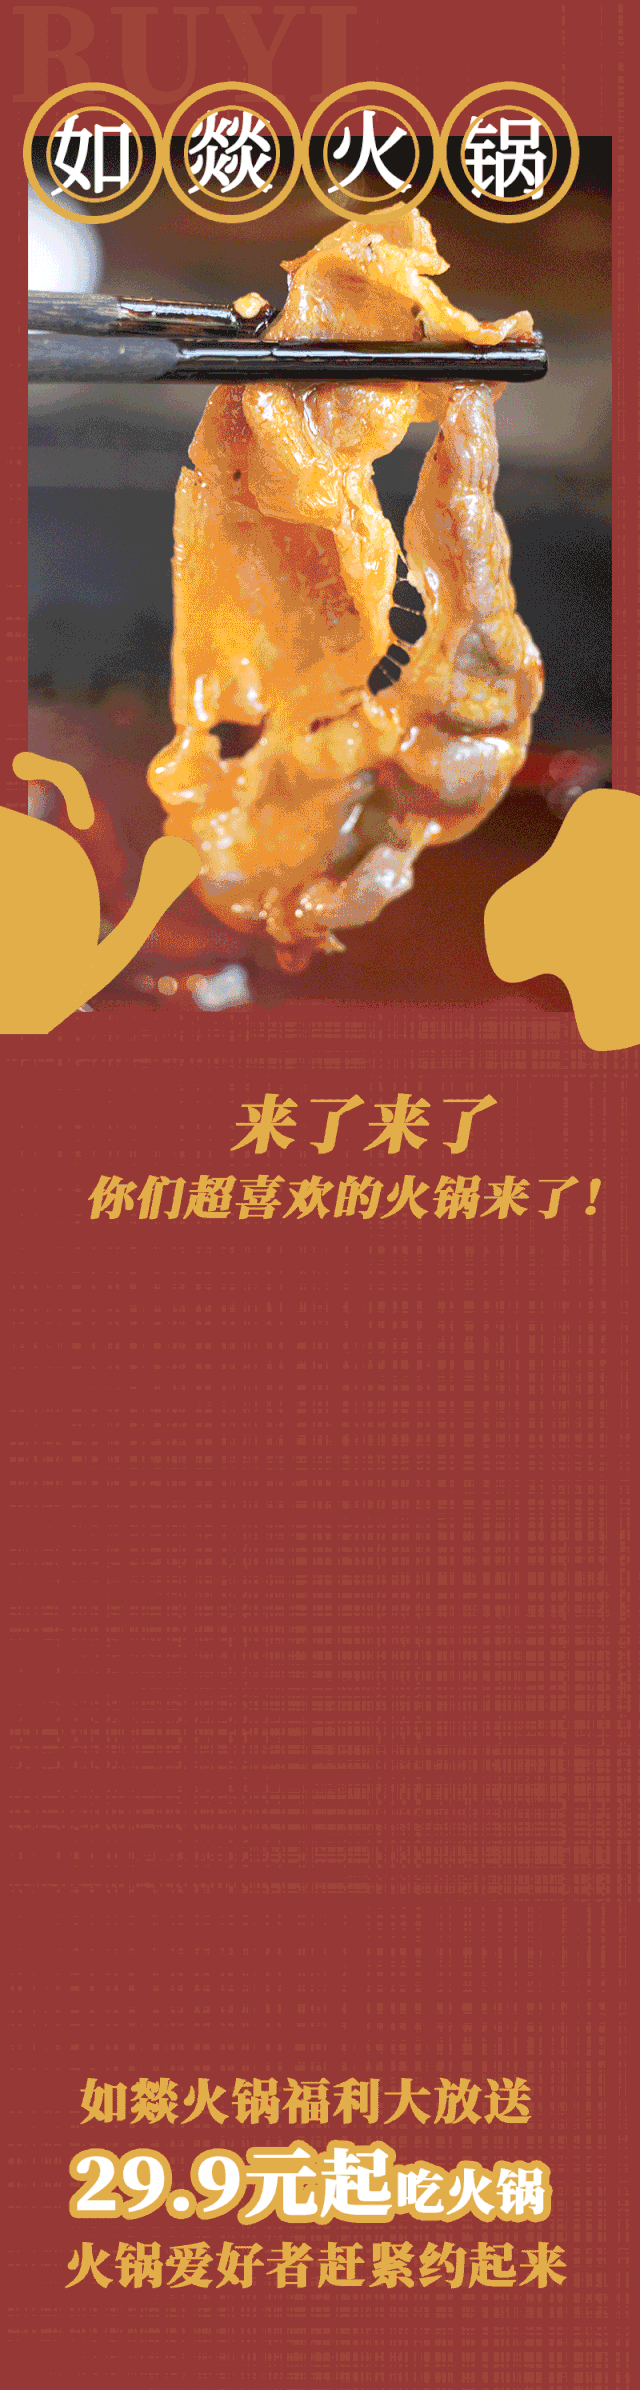 【中山】6.8元抢购如燚火锅100元代金券锅底菜品满200可用1张！可叠加使用无上限！